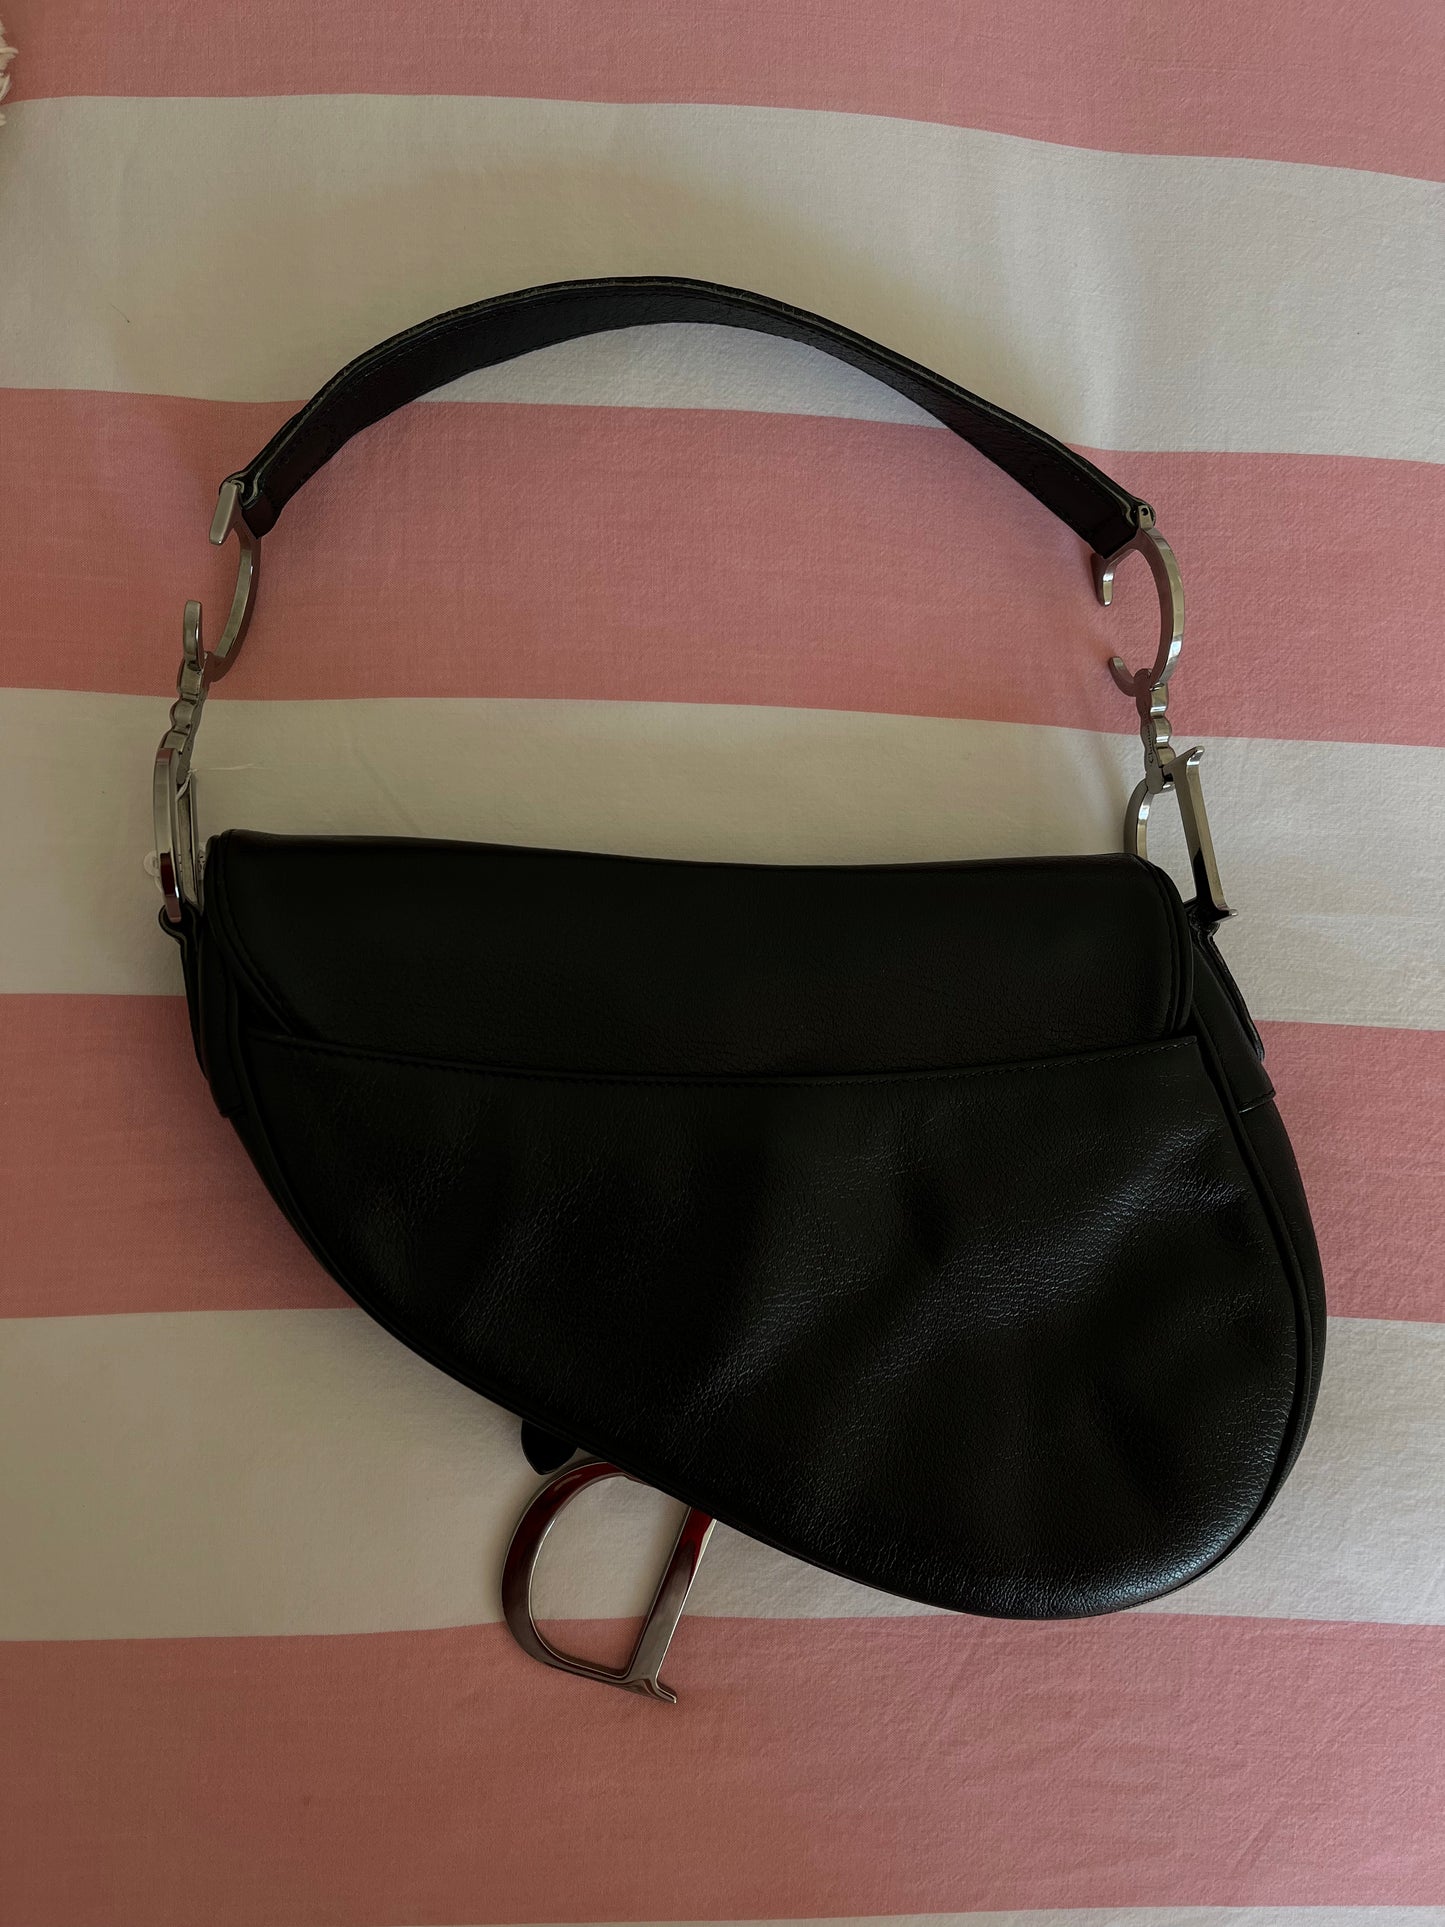 Dior vintage black saddle leather bag